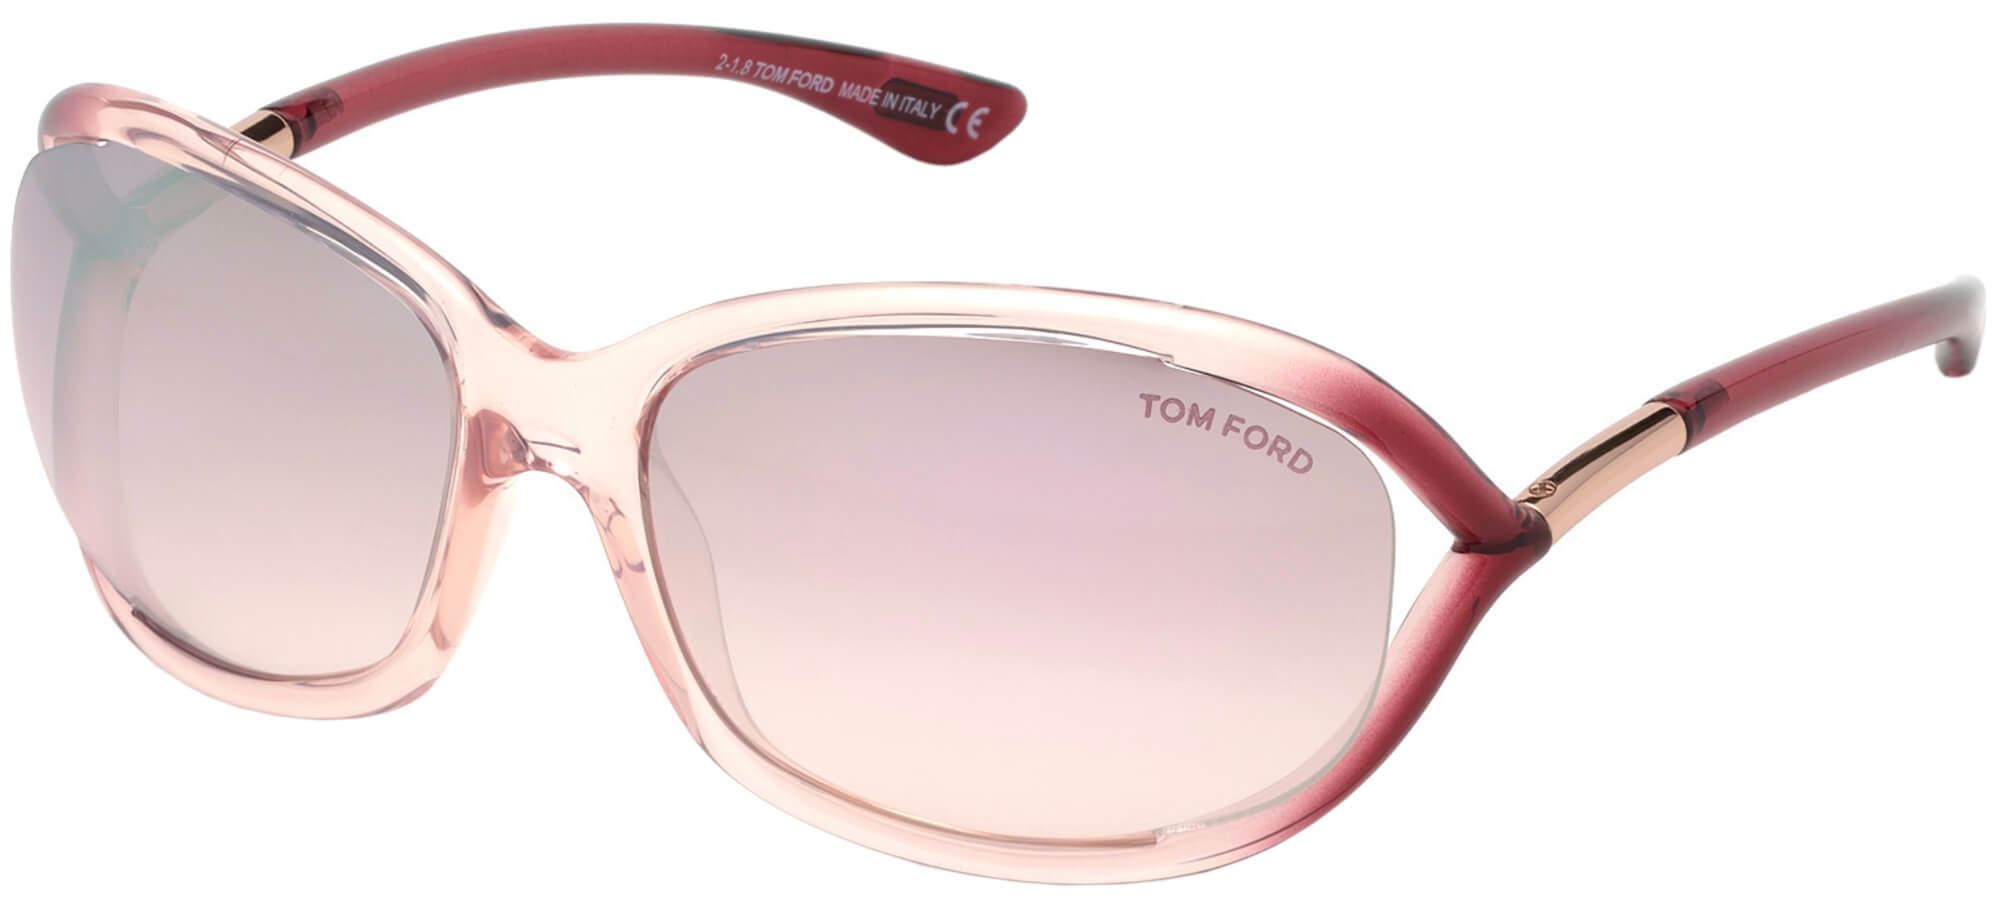 Tom FordJENNIFER FT 0008Pink/violet Shaded (72Z C)